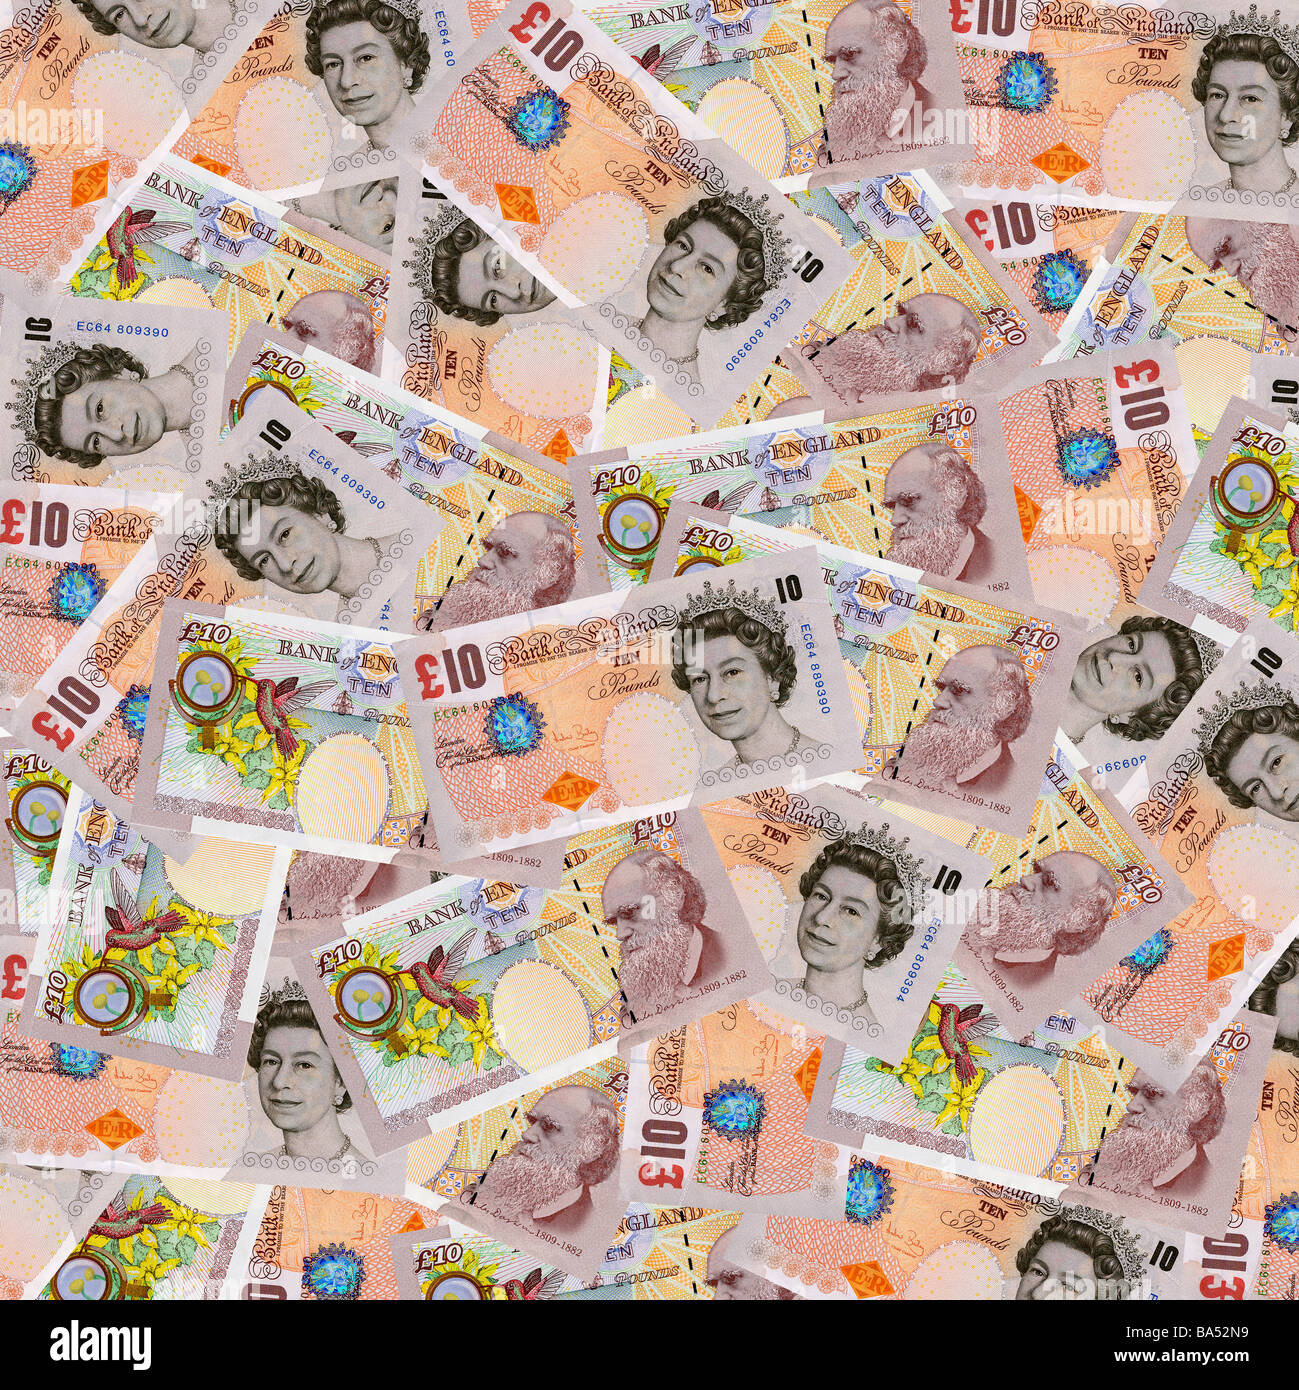 British denaro - dieci note Pound sterling vista aerea Foto Stock